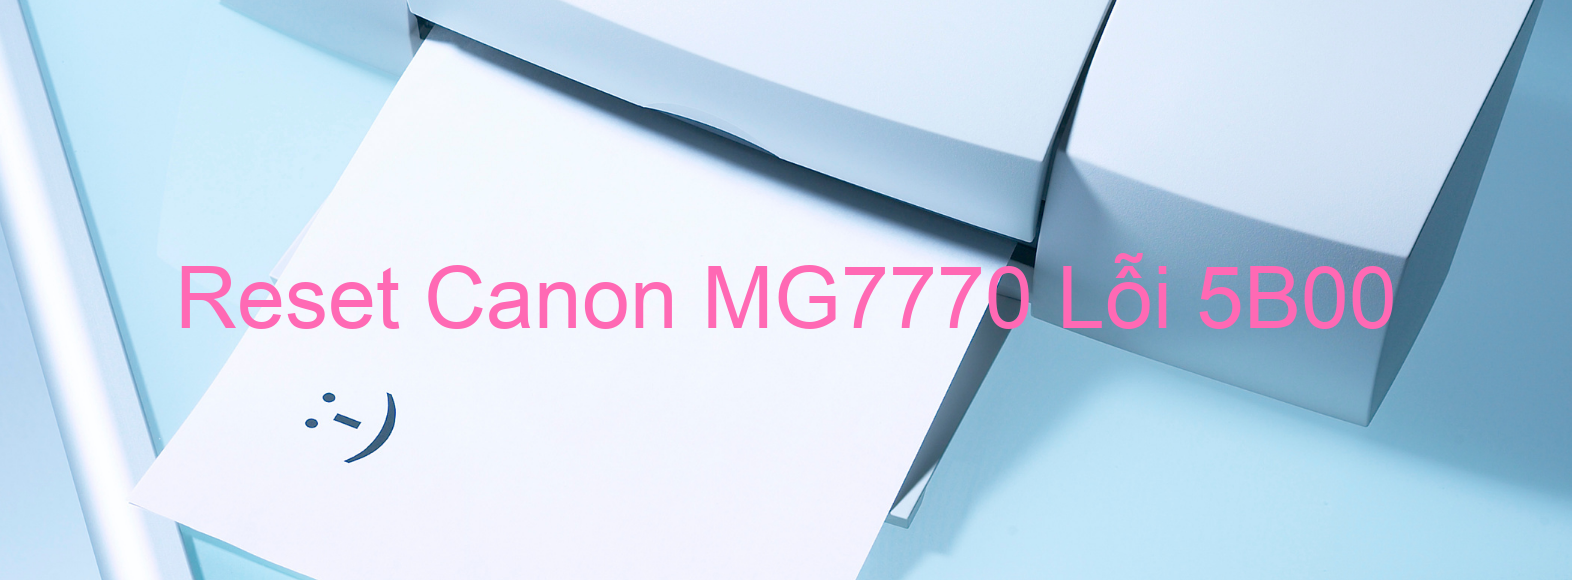 Reset Canon MG7770 Lỗi 5B00